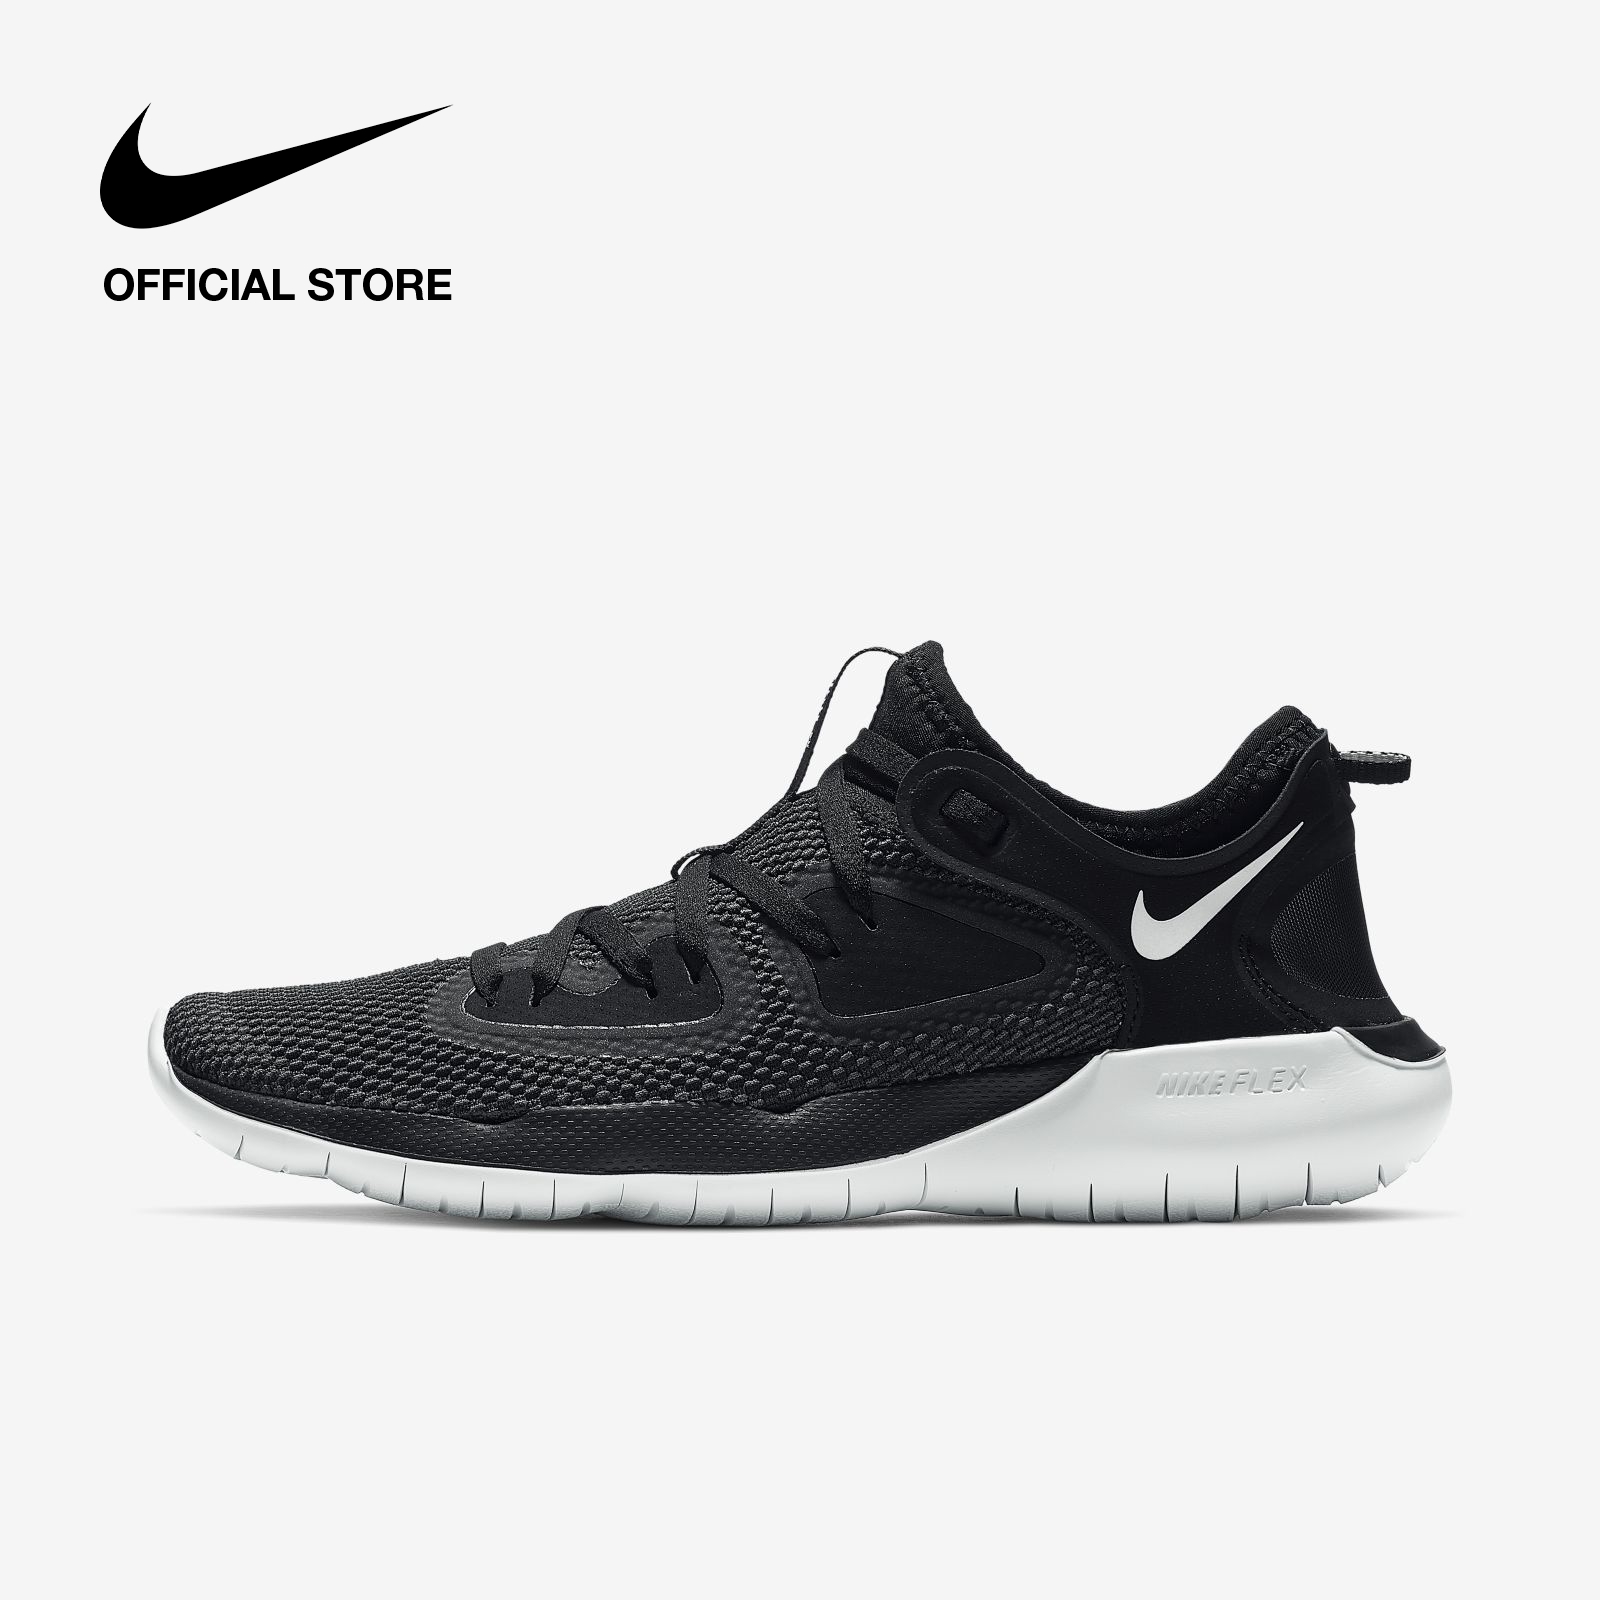 Nike Women's Flex RN 2019 Running Shoes - Black ไนกี้ รองเท้าวิ่งผู้หญิง เฟล็กซ์ อาร์เอ็น 2019 - สีดำ